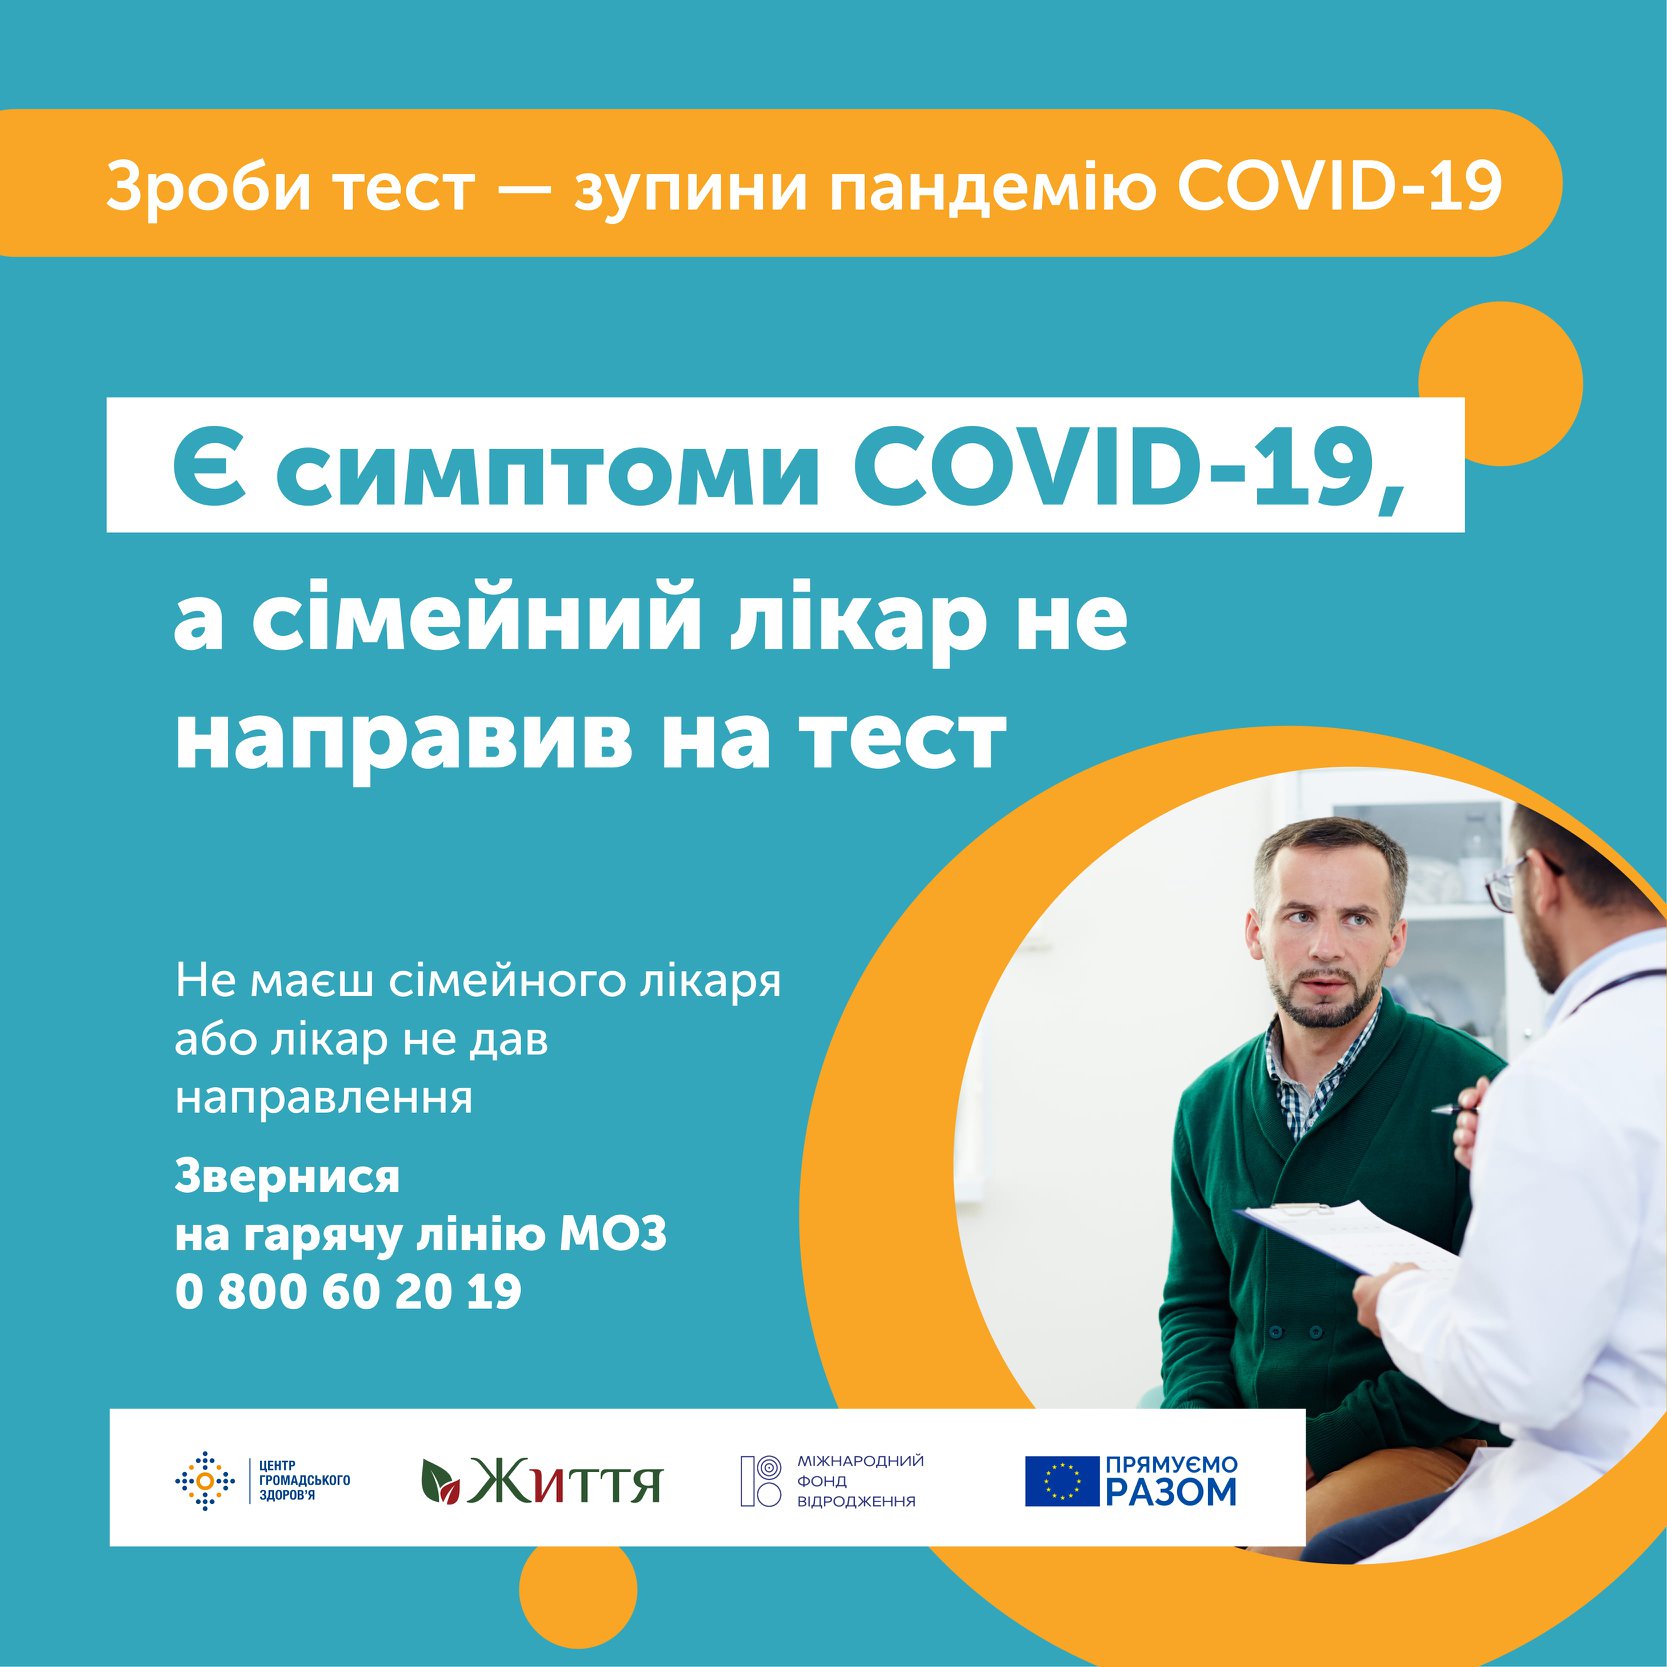 каждый украинец имеет право на бесплатный тест на Сovid-19